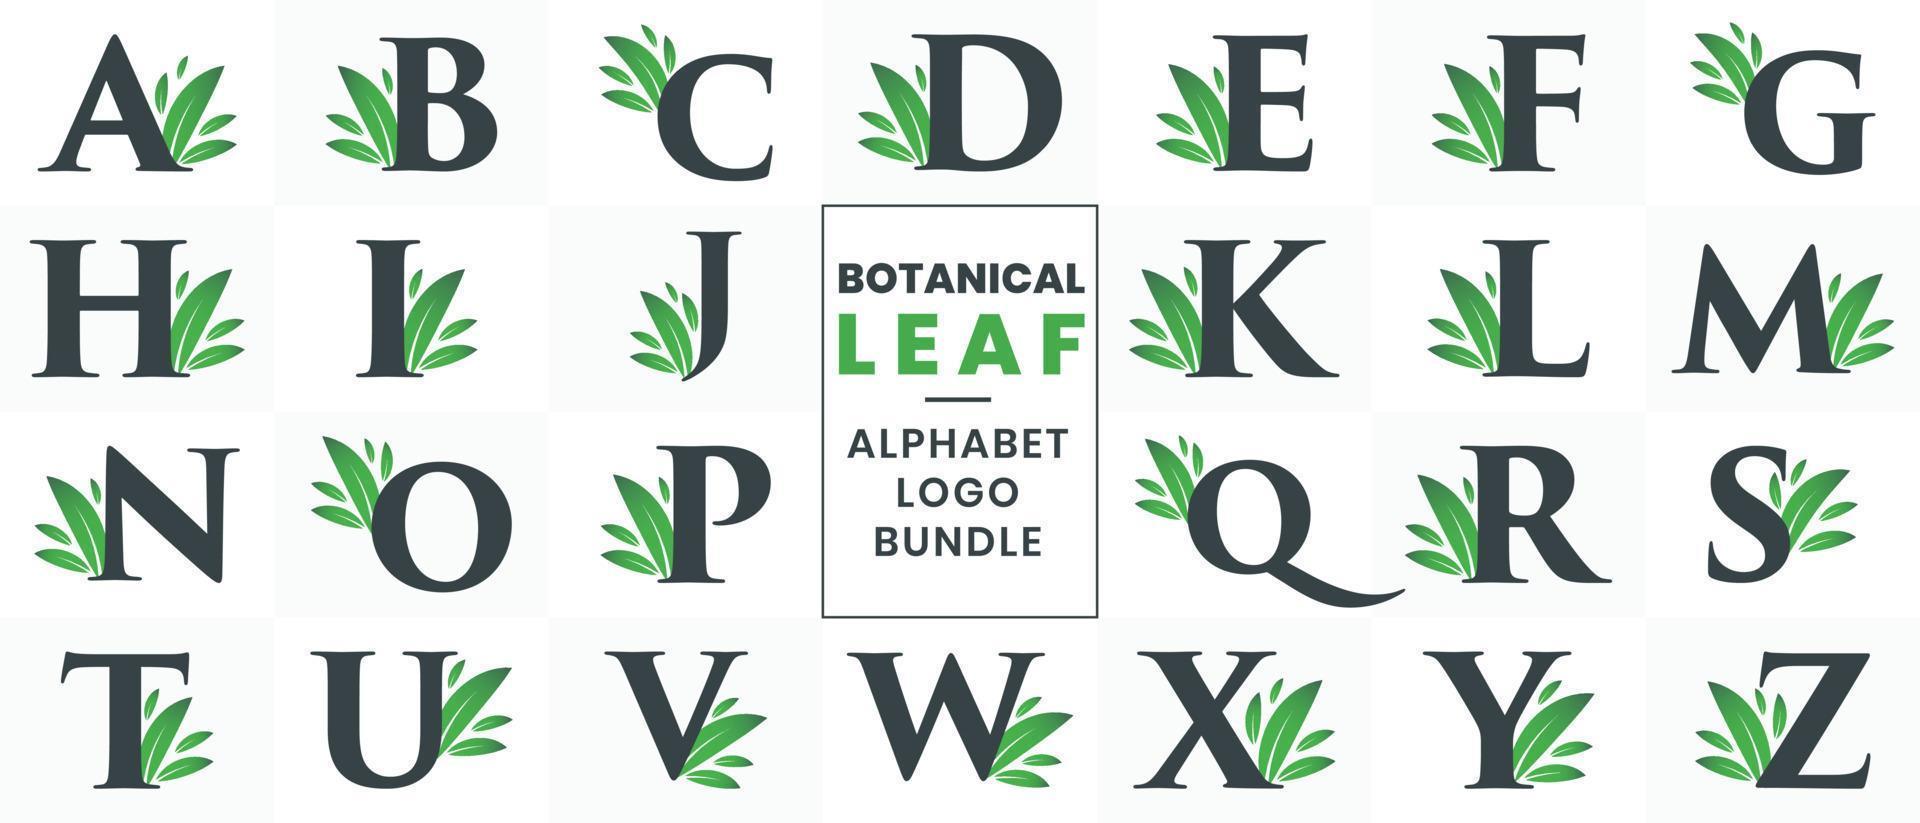 Botanical Leaf Alphabet logo bundle. Green Natural Letter logo set A to Z vector